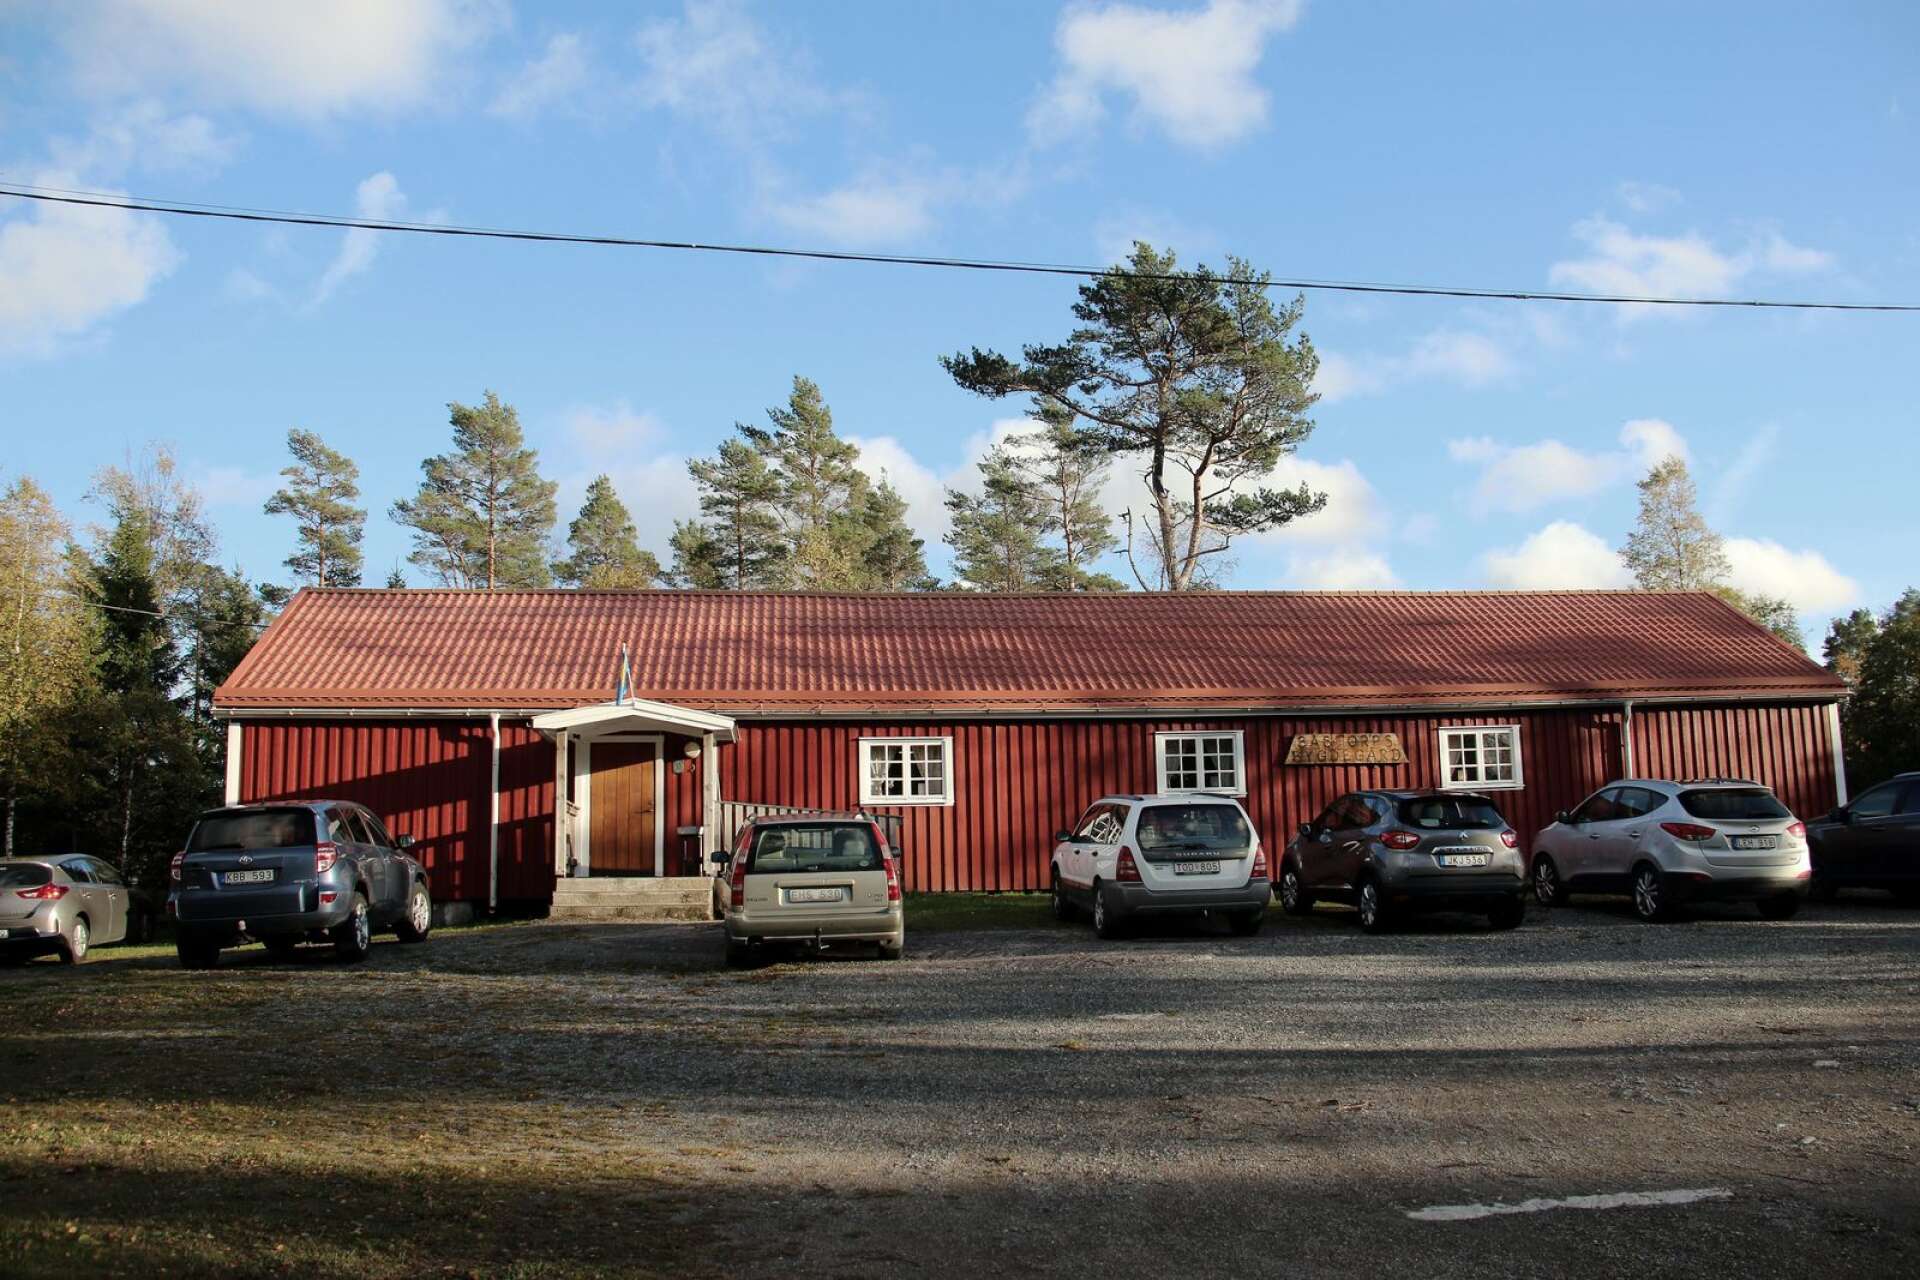 Frvilligorganisationen Missing People hade sin samlingsplats vid Bästorps bygdegård. Den försvunne mannens kropp hittades i skogen intill.